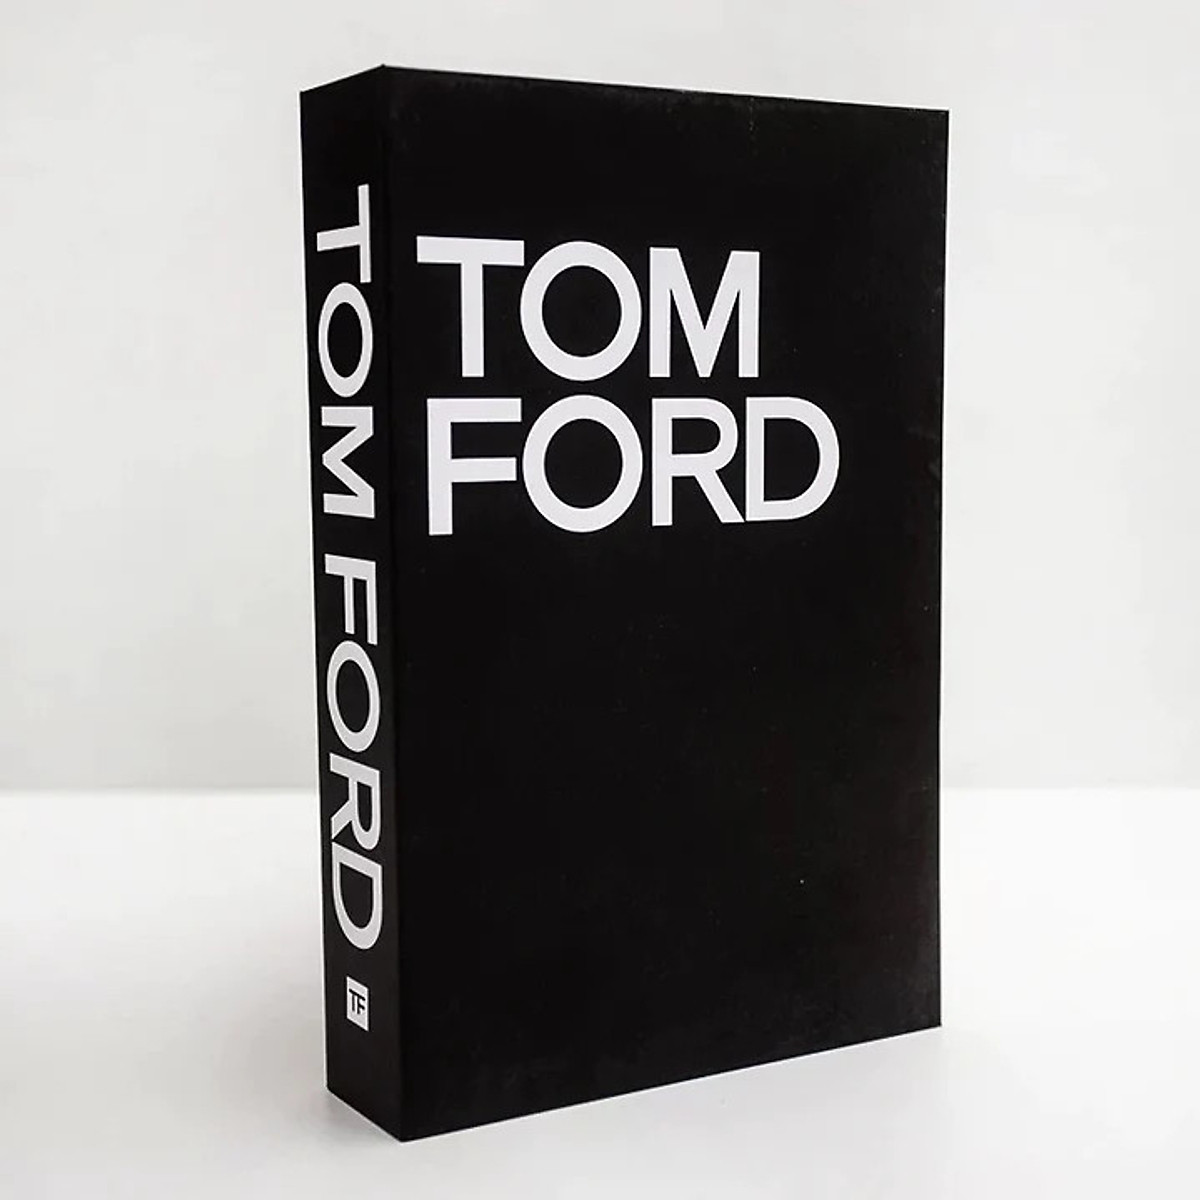 Mua Tom Ford Book tại Đồ chơi giáo dục thông minh